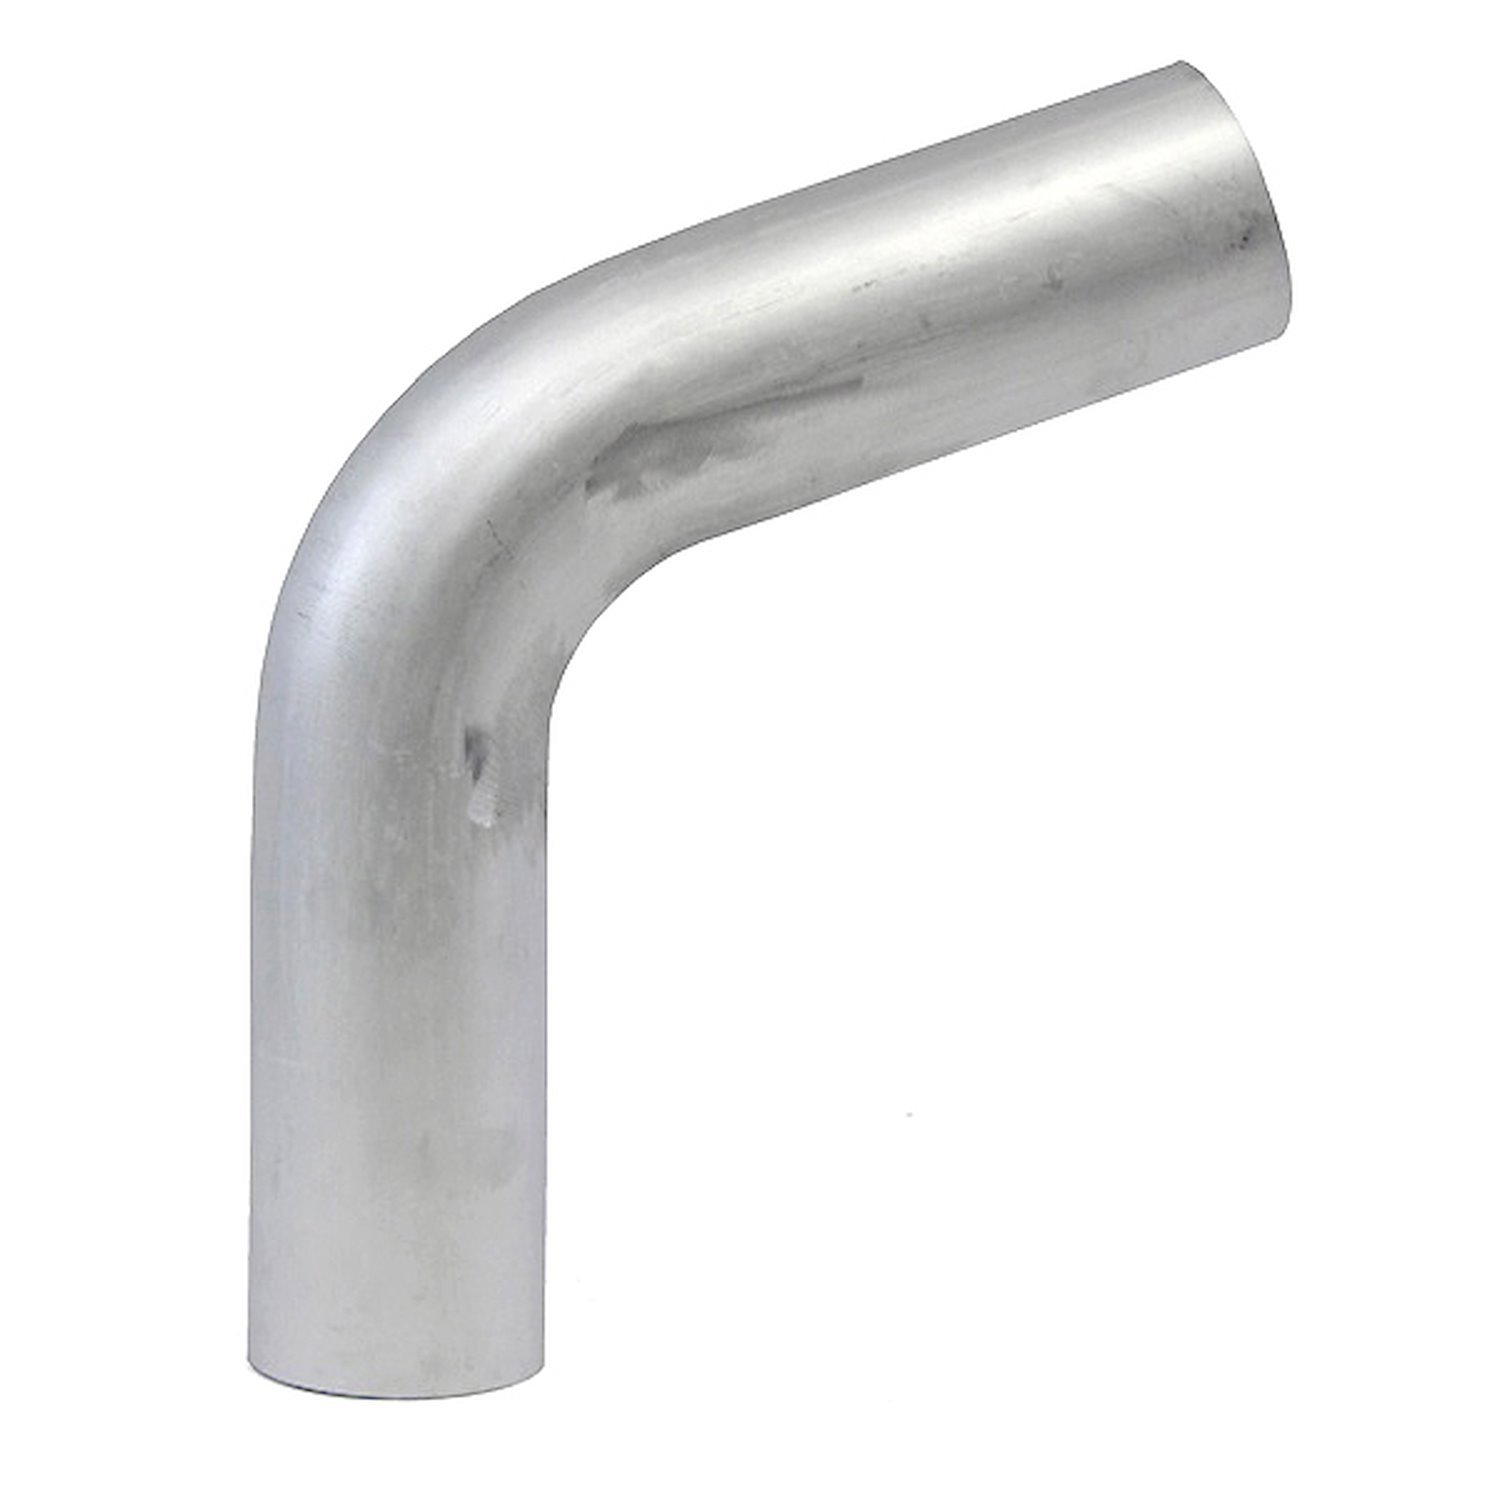 AT70-400-CLR-55 Aluminum Elbow Tube, 6061 Aluminum, 70-Degree Bend Elbow Tubing, 4 in. OD, Large Radius, 5-1/2 in. CLR